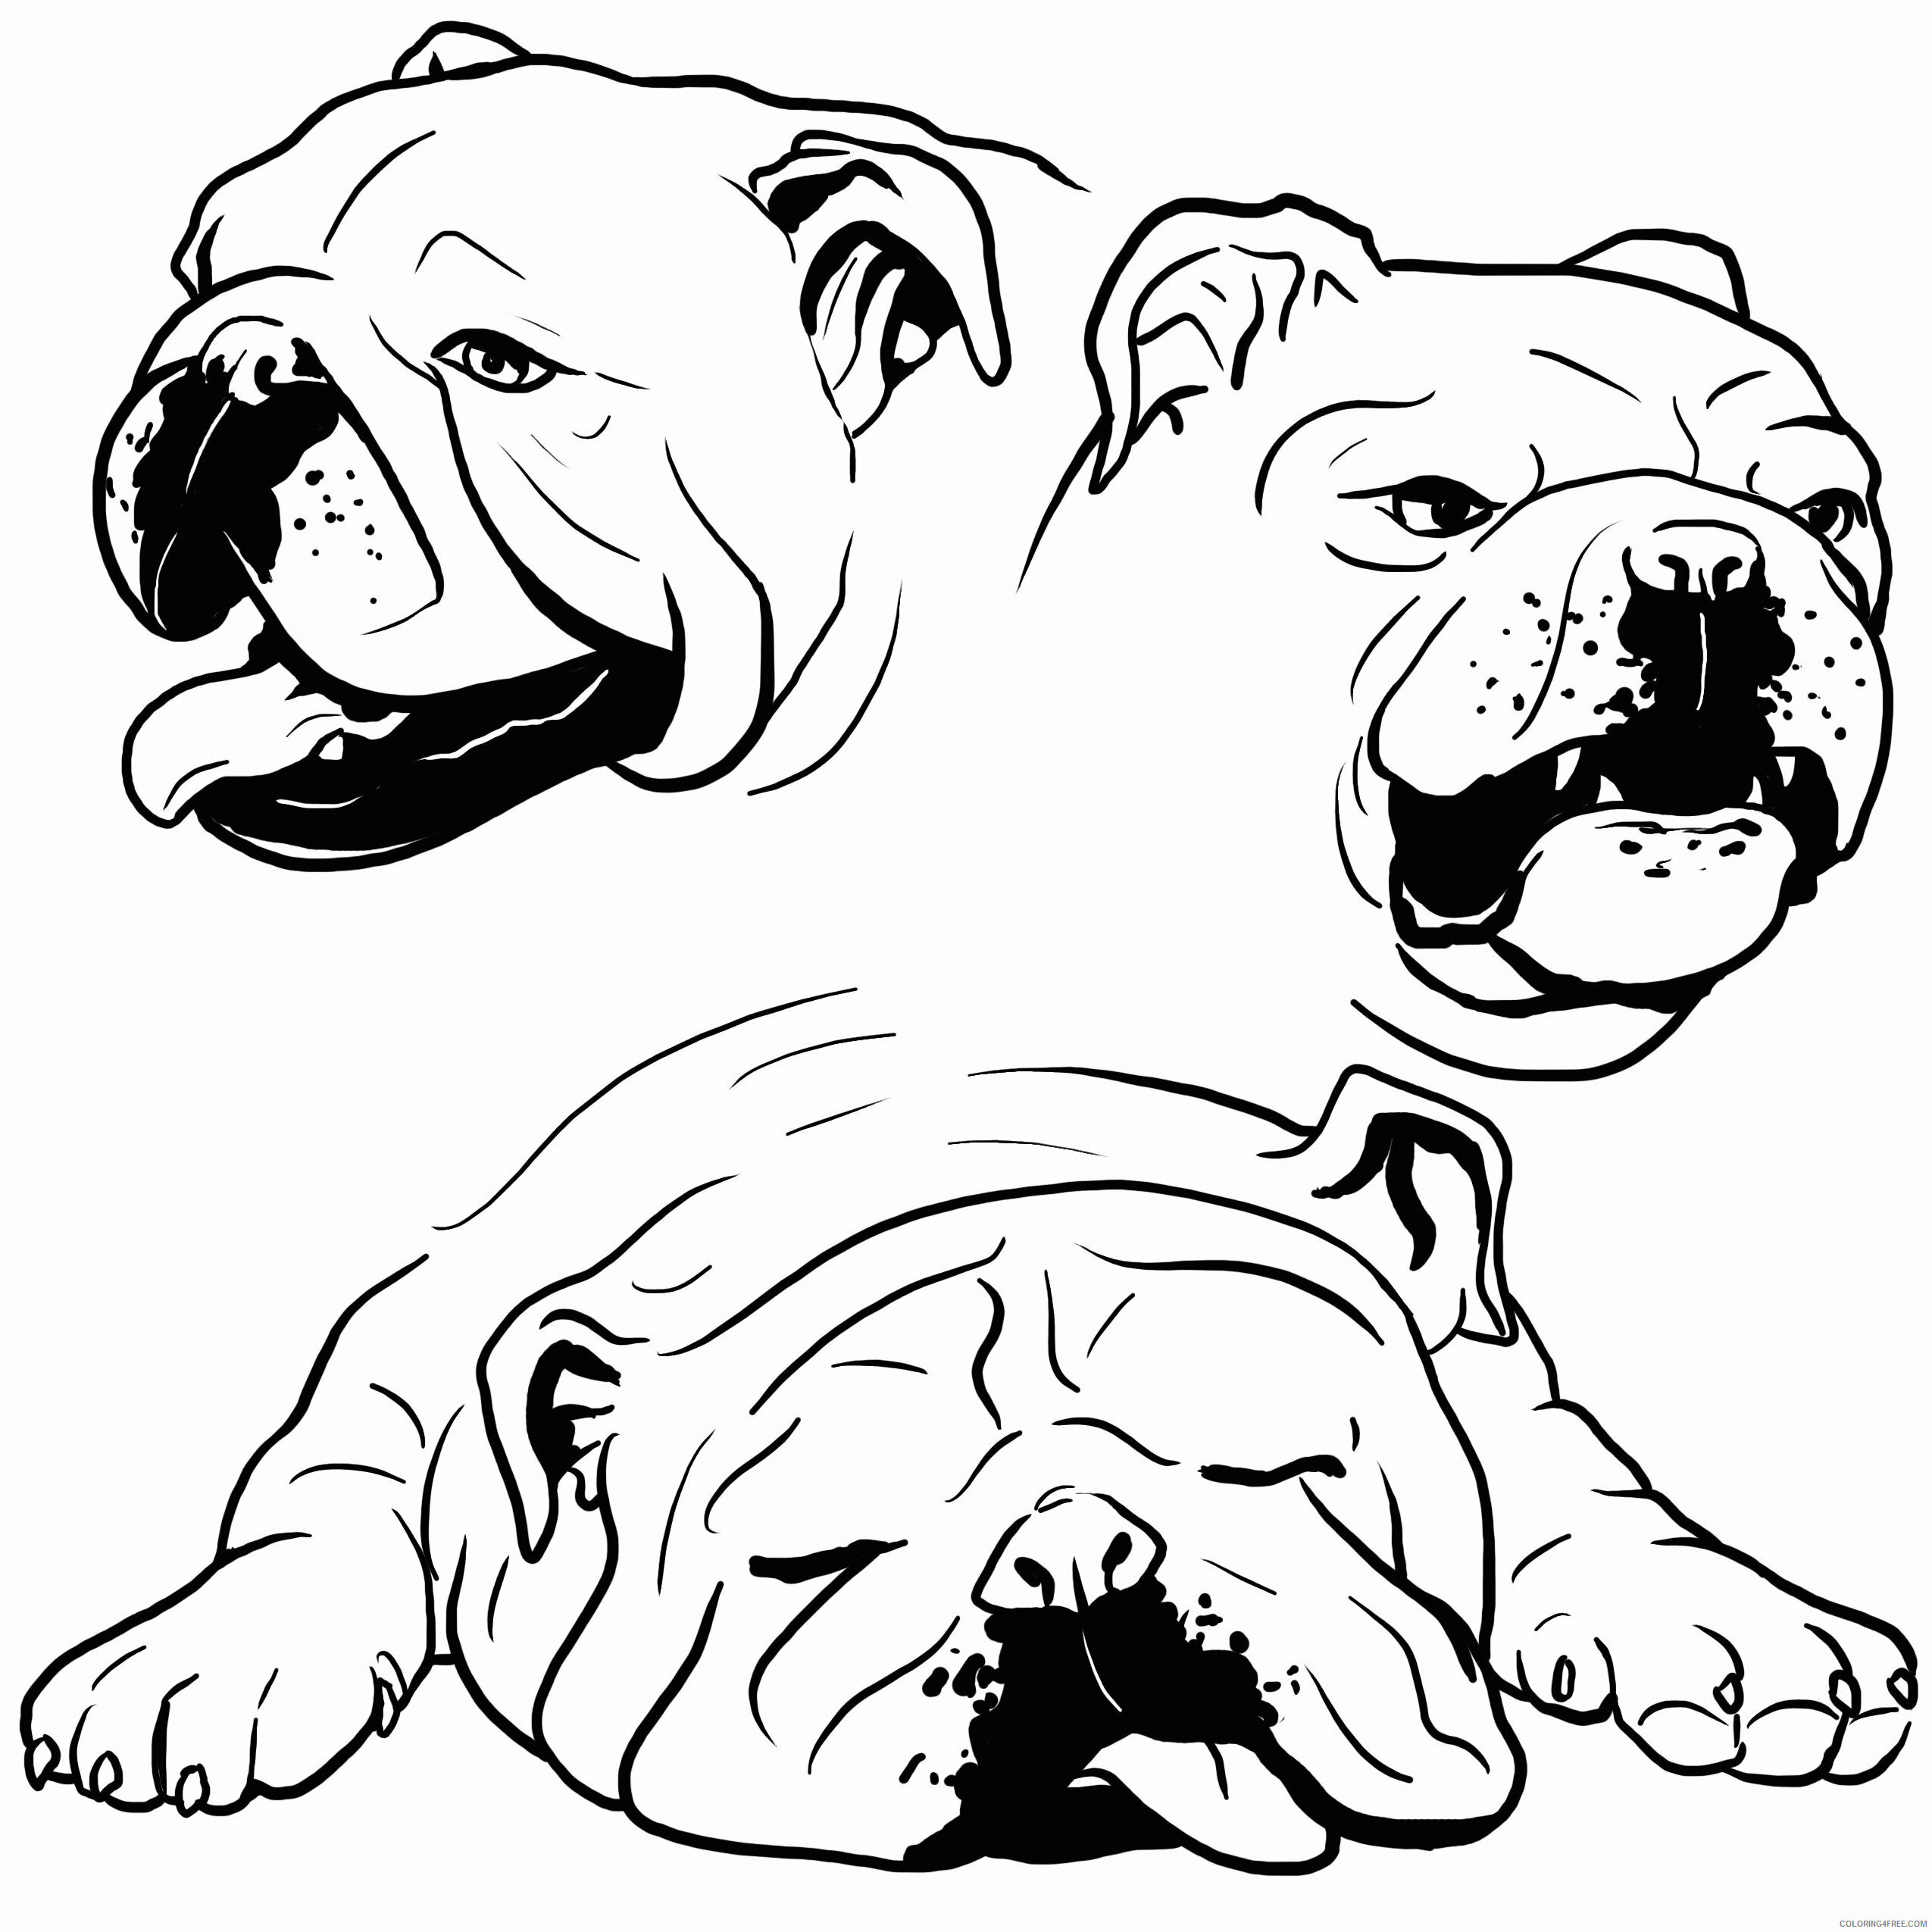 Bulldog Coloring Pages Animal Printable Sheets Cute Bulldog Portraits for 2021 0623 Coloring4free